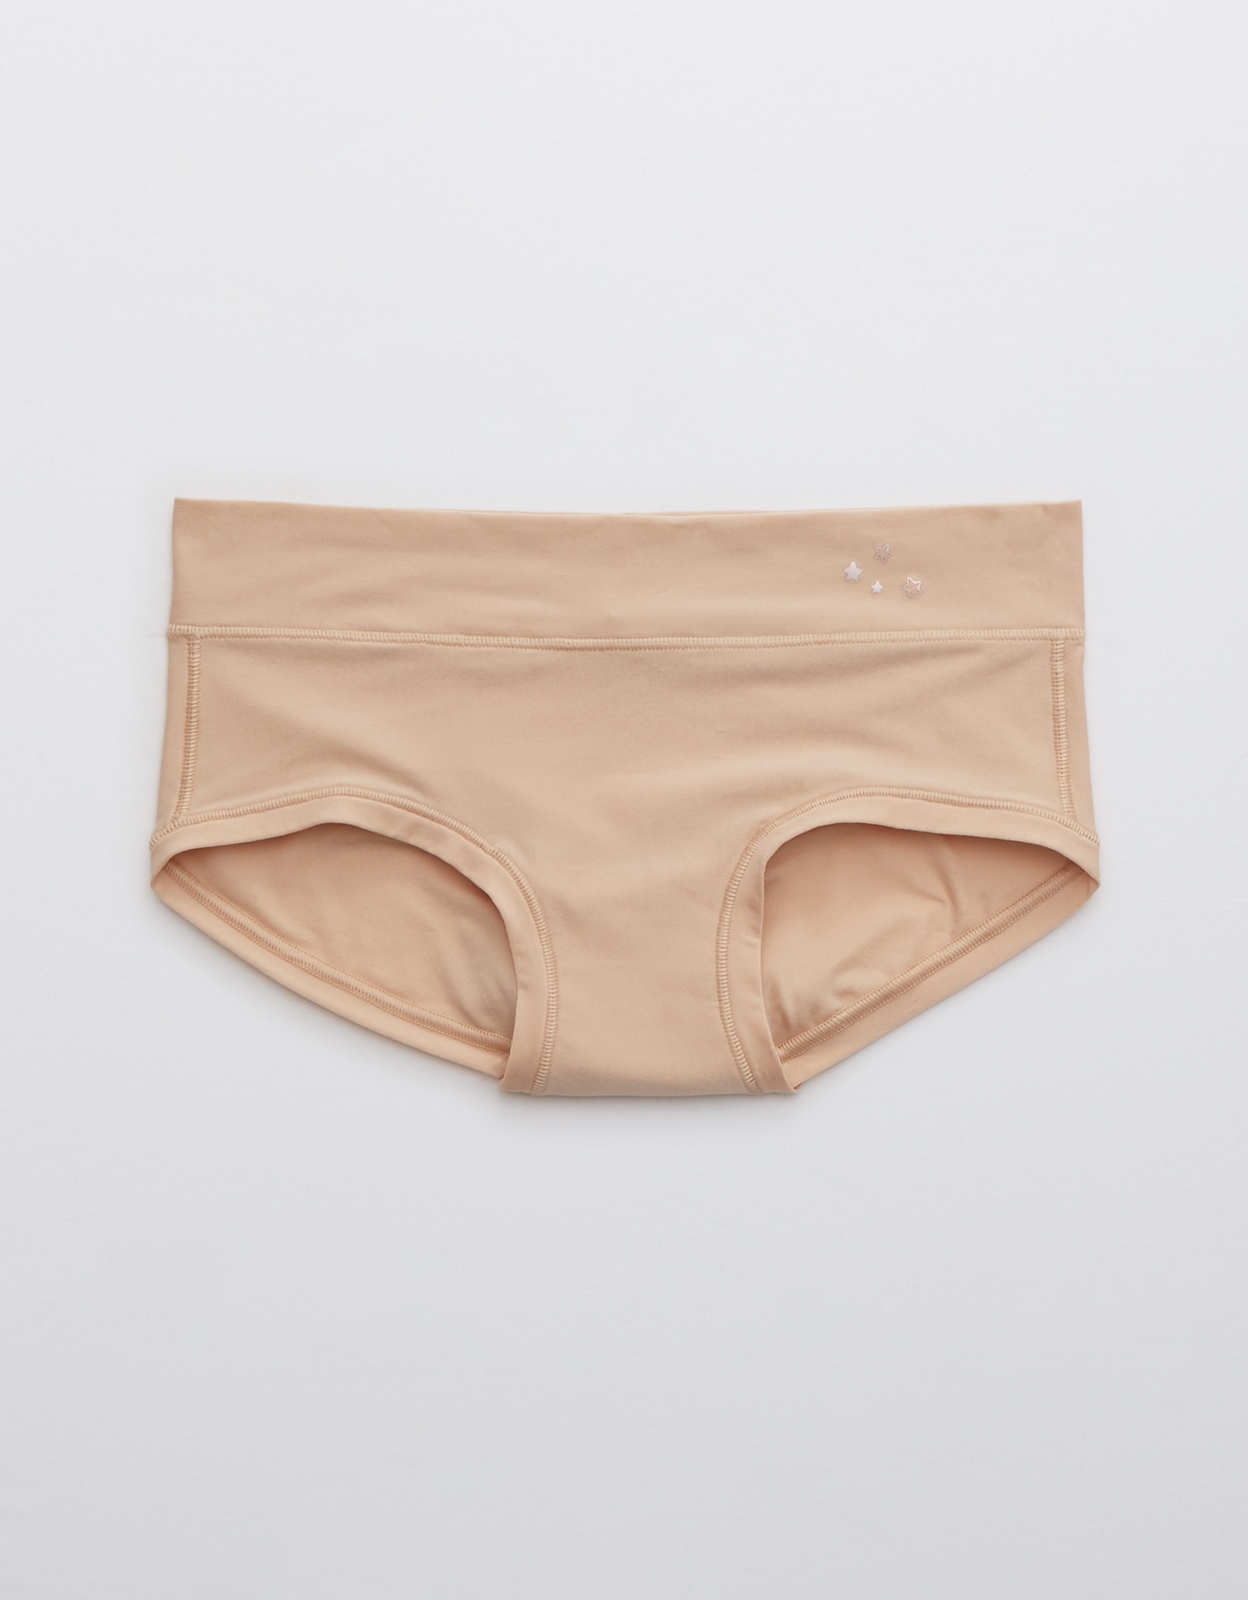 Shop Aerie Eyelash Lace High Waisted Boybrief Underwear online